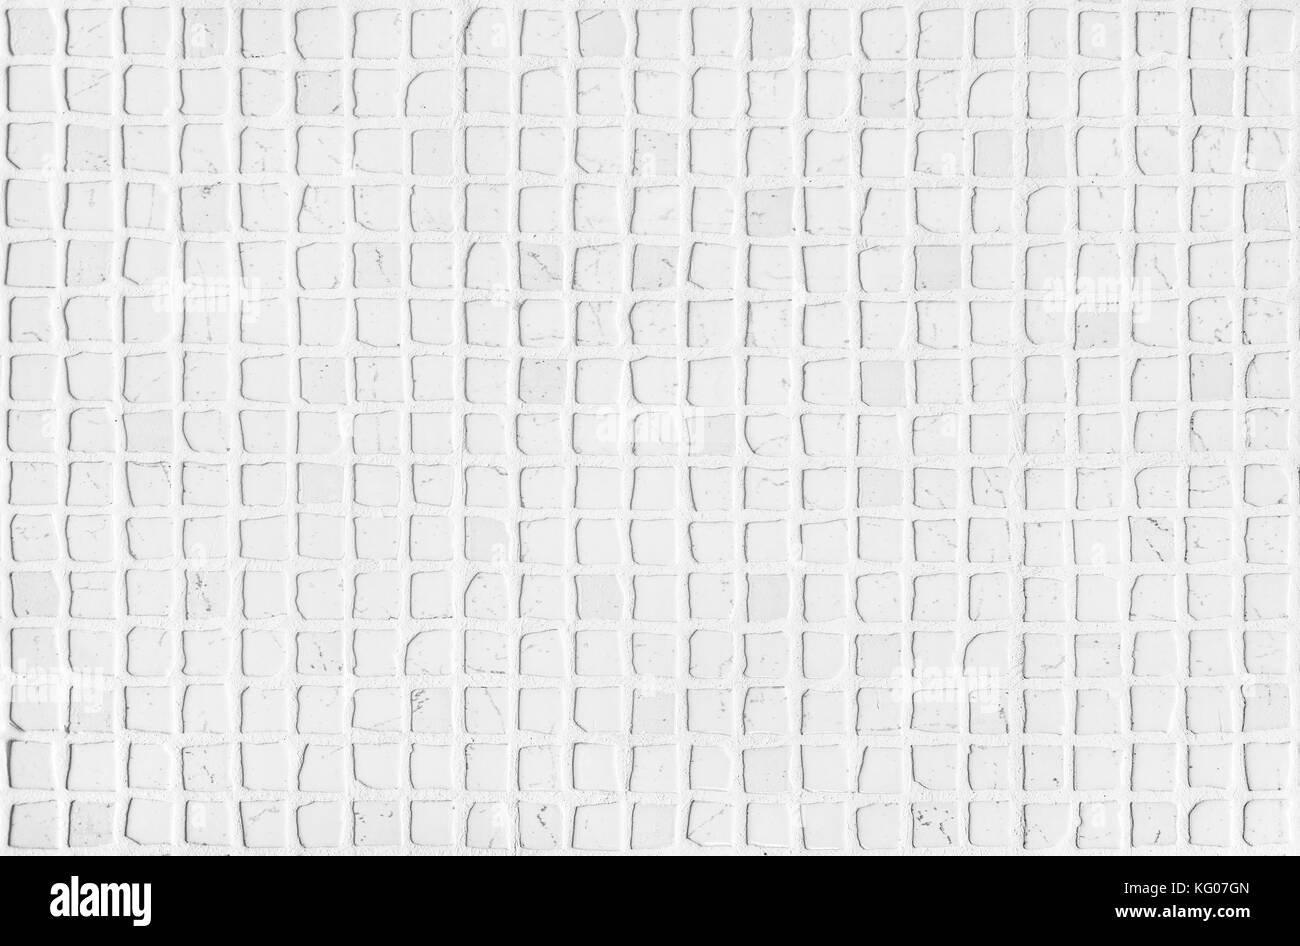 Carreaux de mosaïque de marbre blanc de carrare lumière naturelle surface texture pour les murs de salle de bains ou cuisine ou un comptoir Banque D'Images